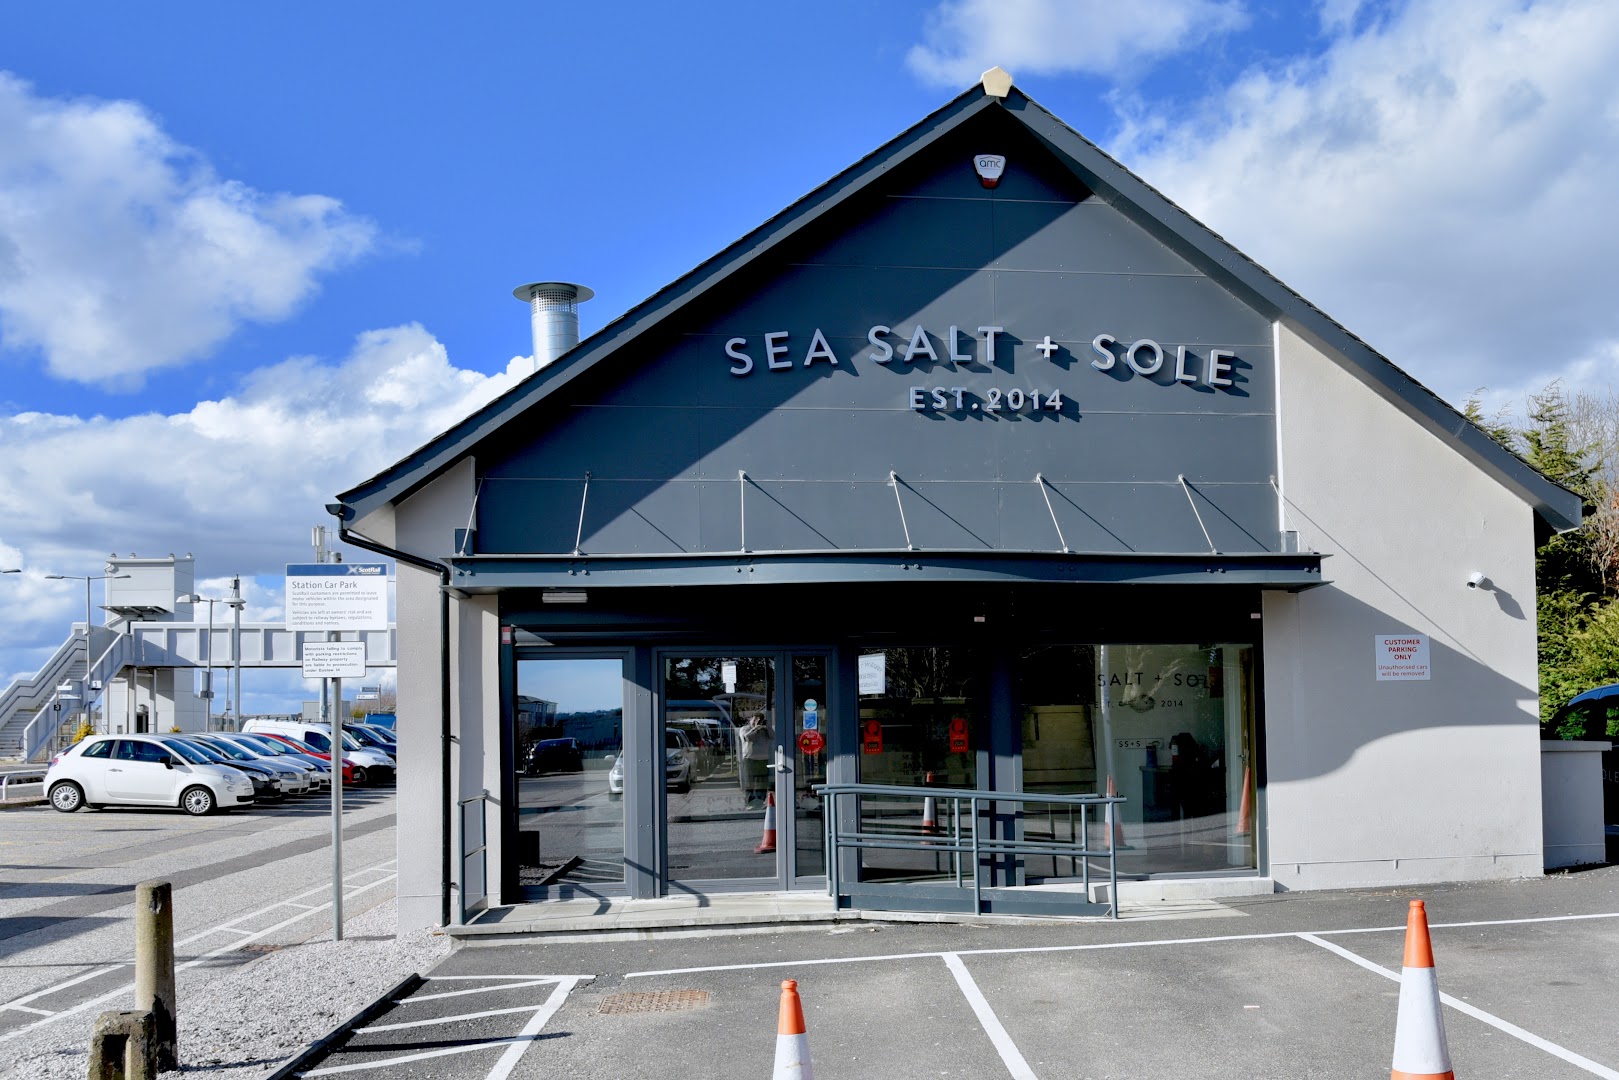 Sea Salt + Sole